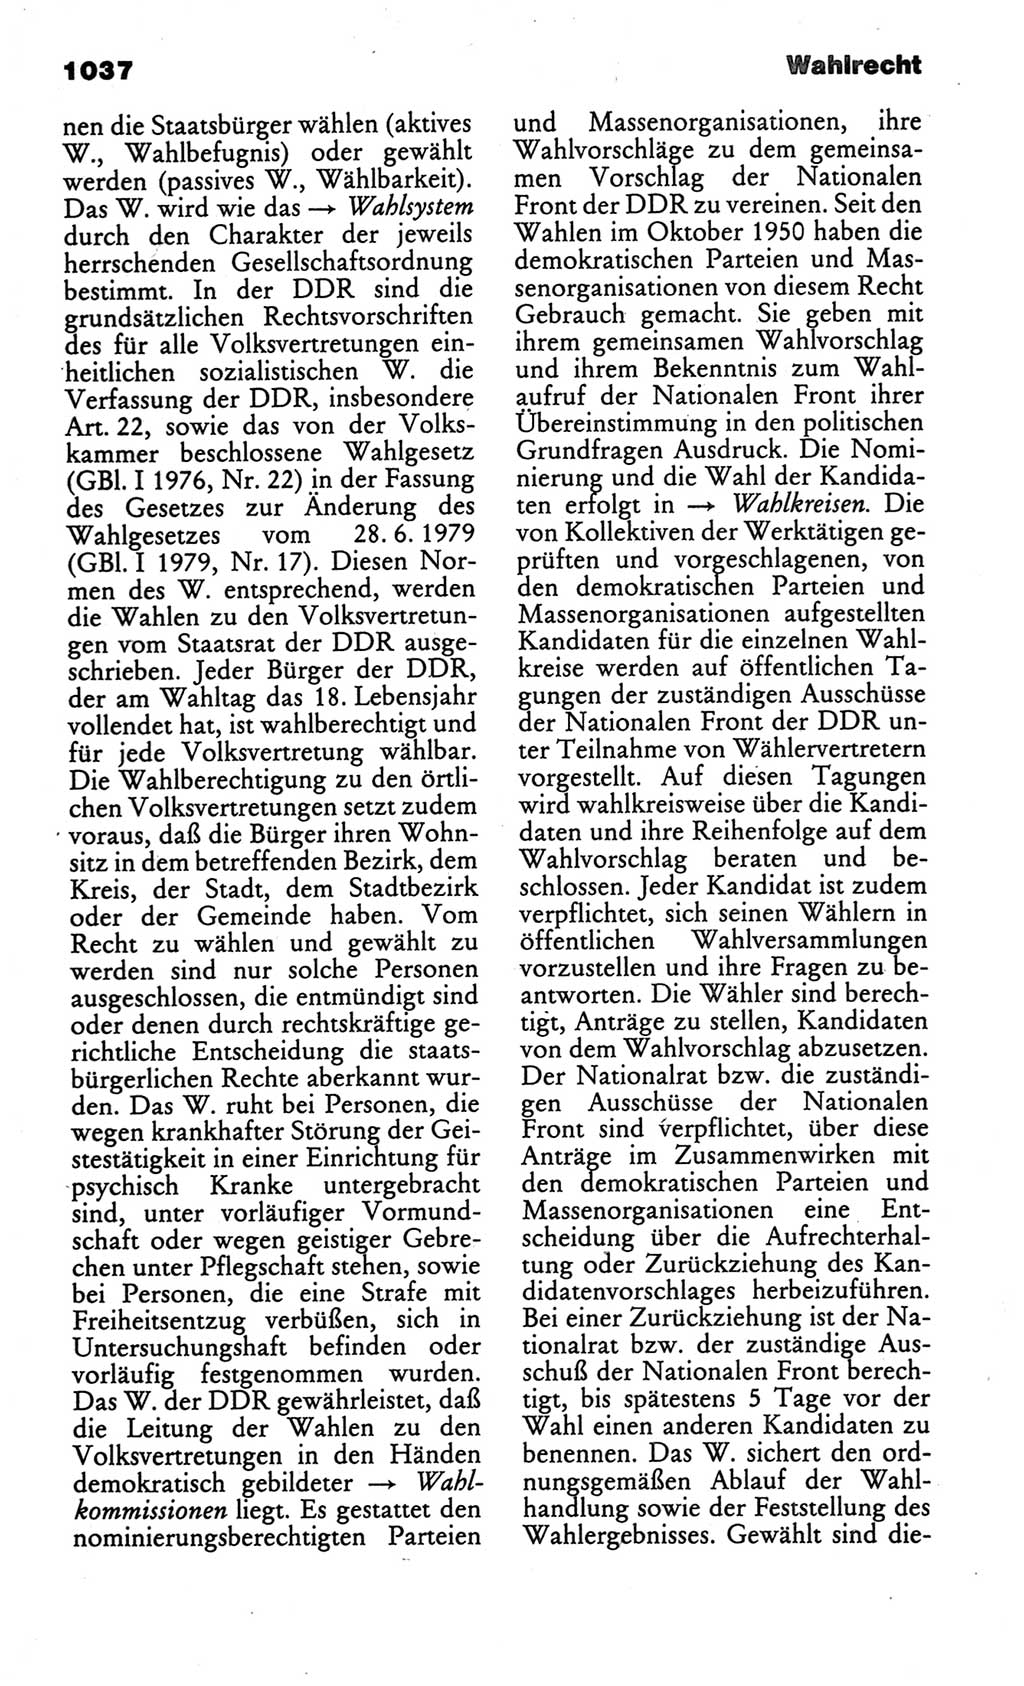 Kleines politisches Wörterbuch [Deutsche Demokratische Republik (DDR)] 1986, Seite 1037 (Kl. pol. Wb. DDR 1986, S. 1037)